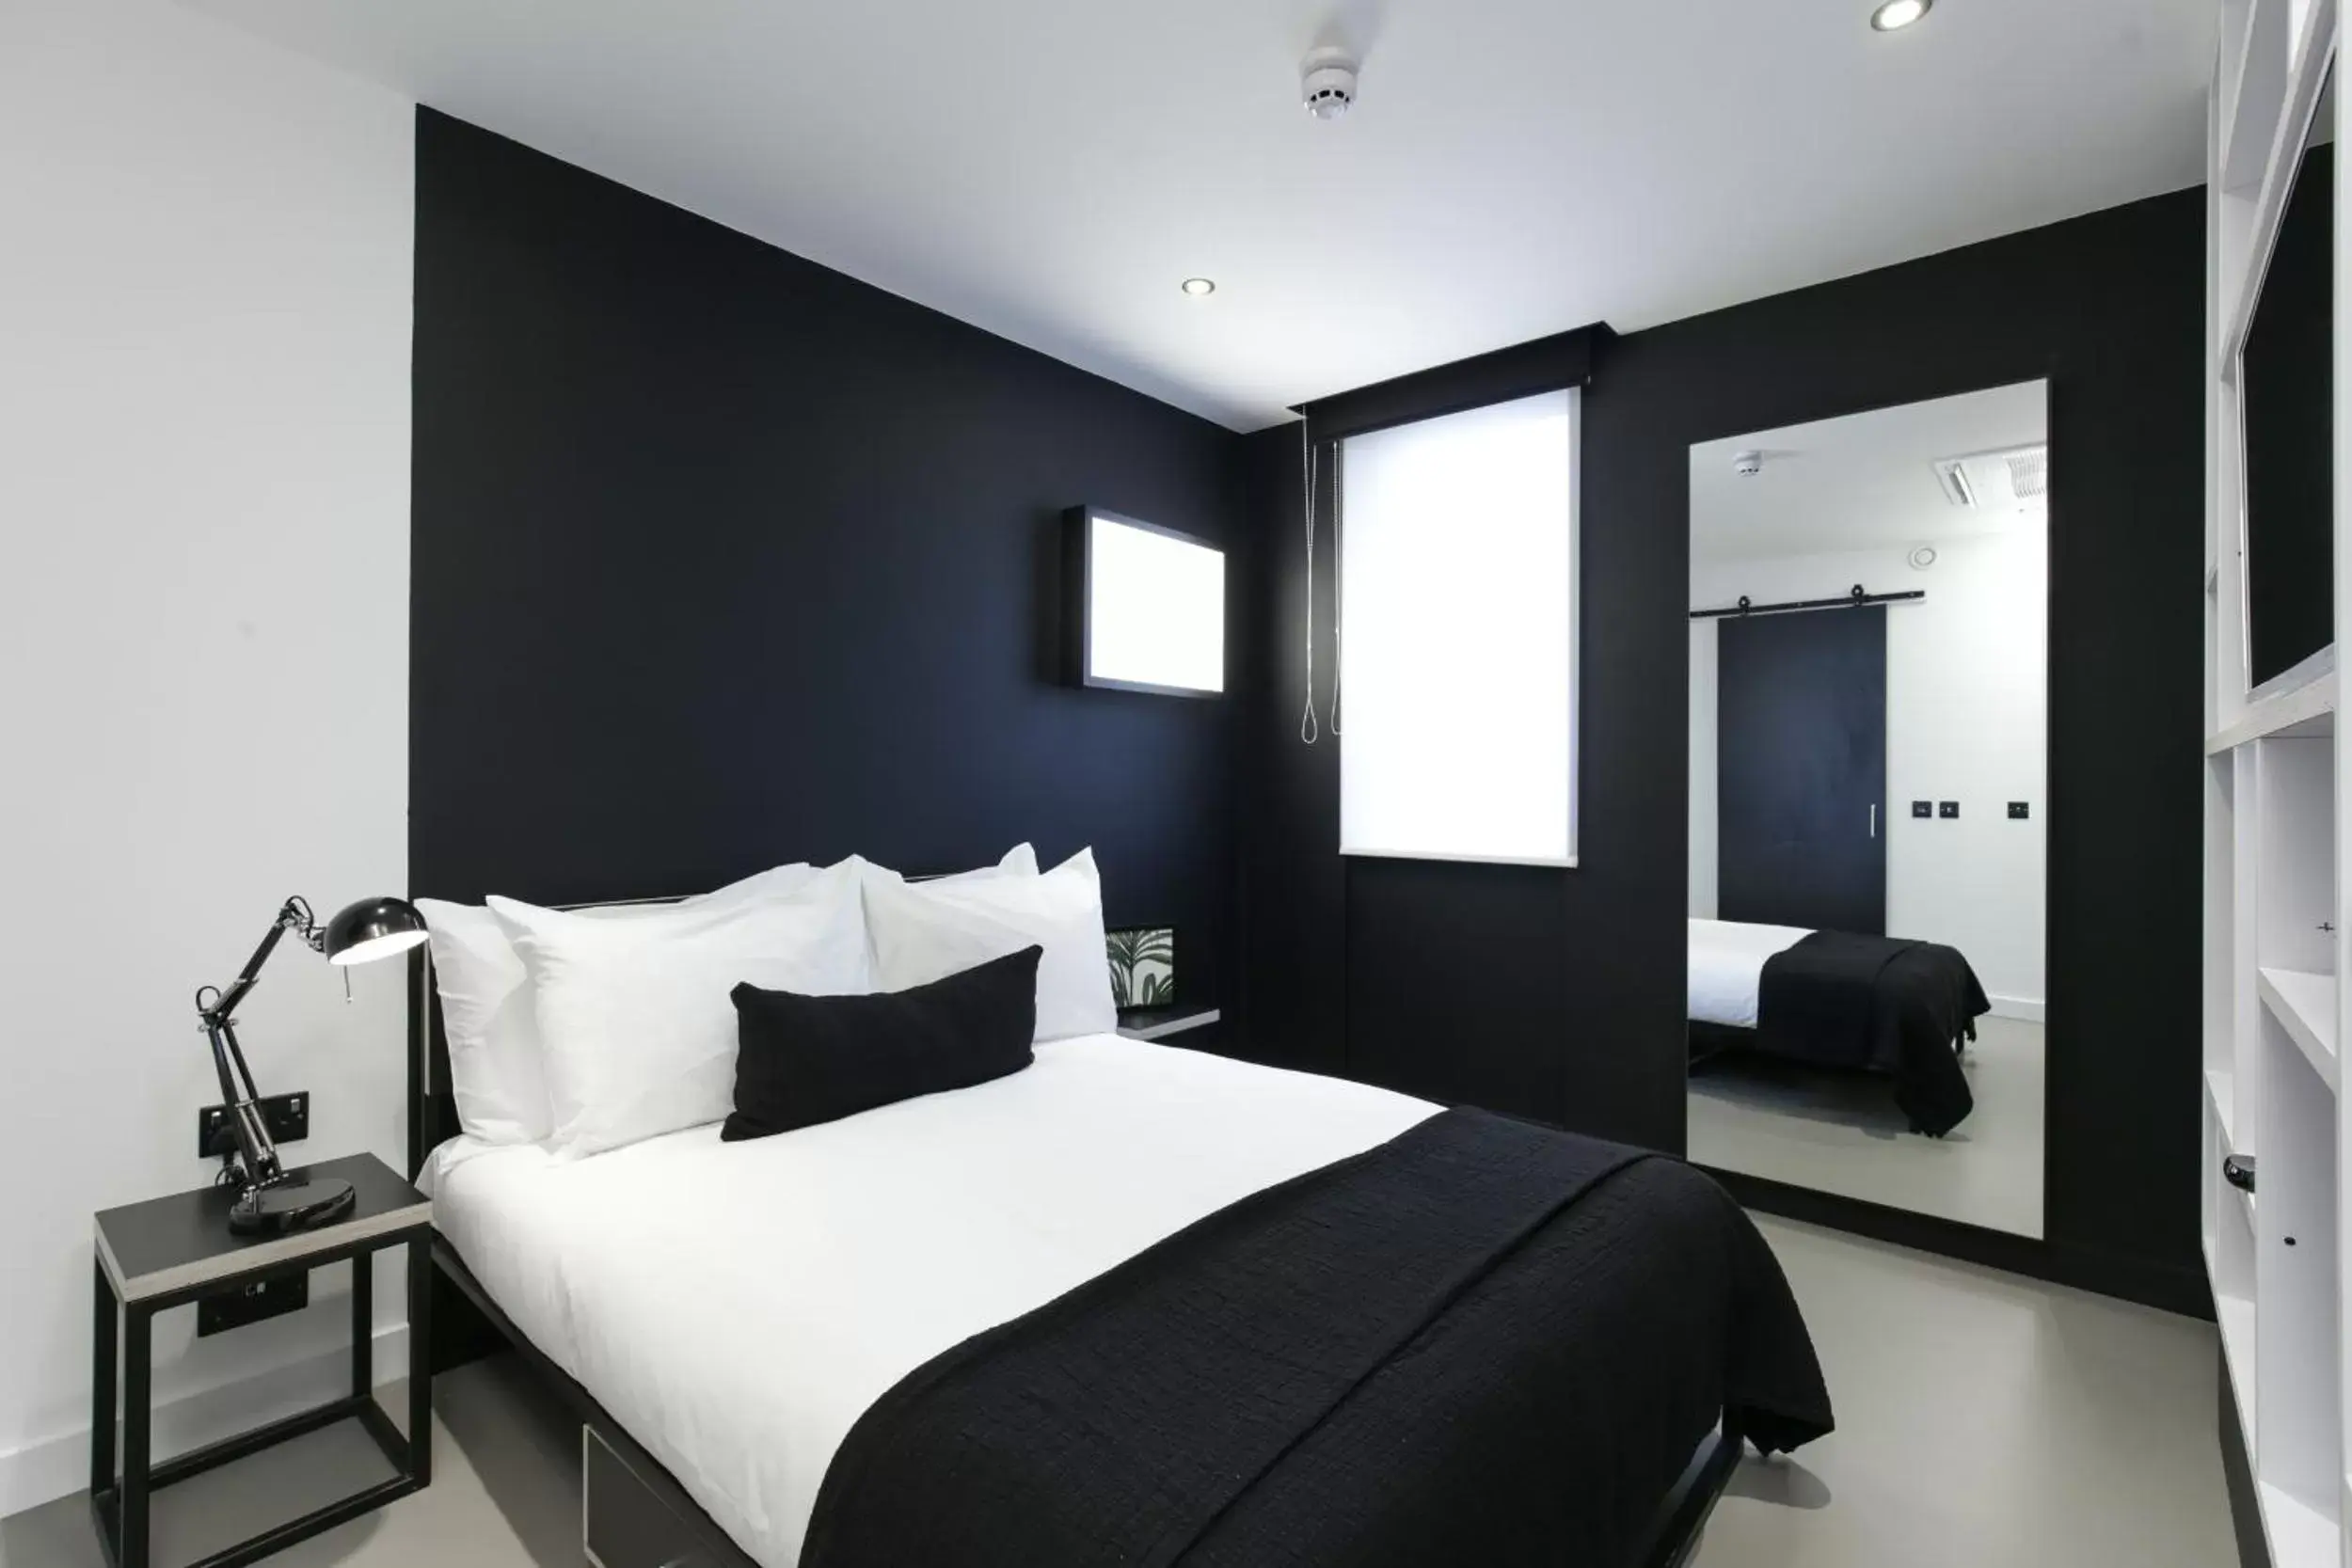 Standard Double Room in Kip Hotel